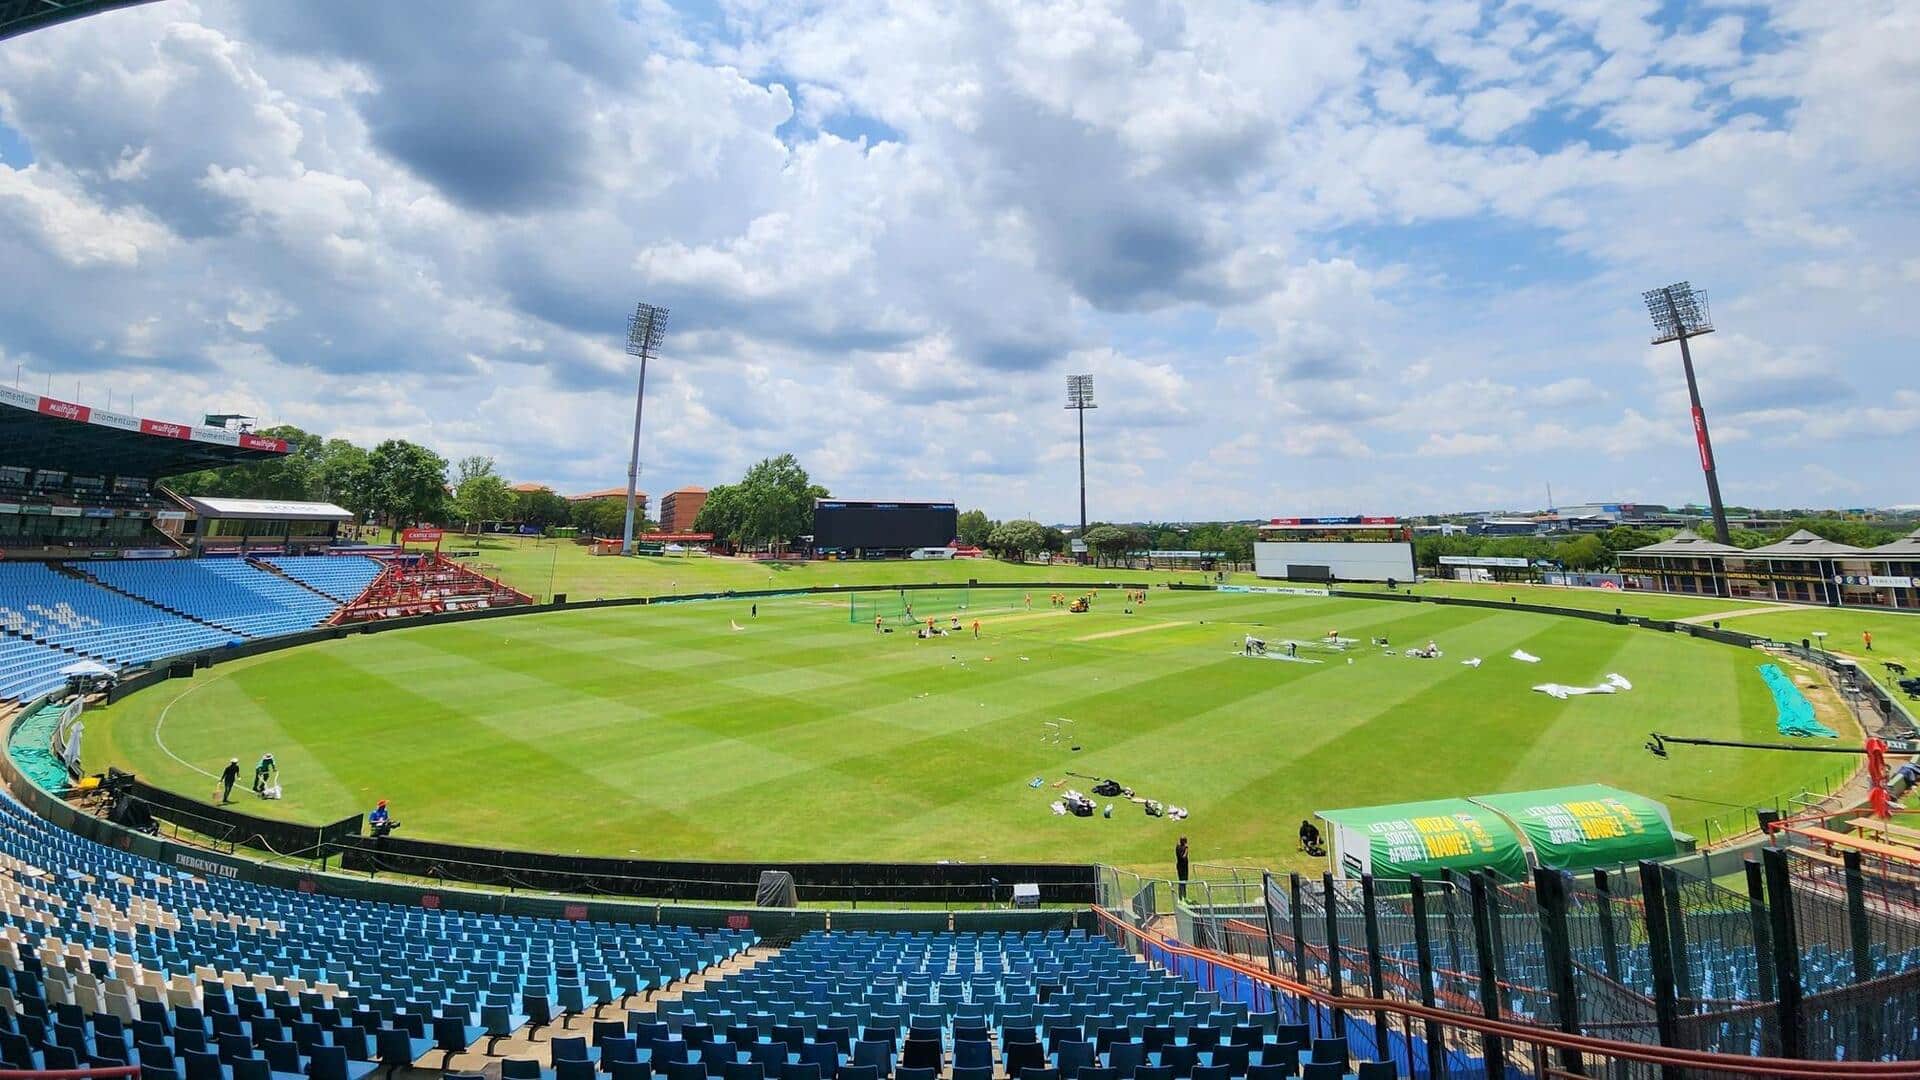 दक्षिण अफ्रीका बनाम भारत, पहला टेस्ट: सुपरस्पोर्ट पार्क स्टेडियम की पिच रिपोर्ट और रोचक आंकड़े 